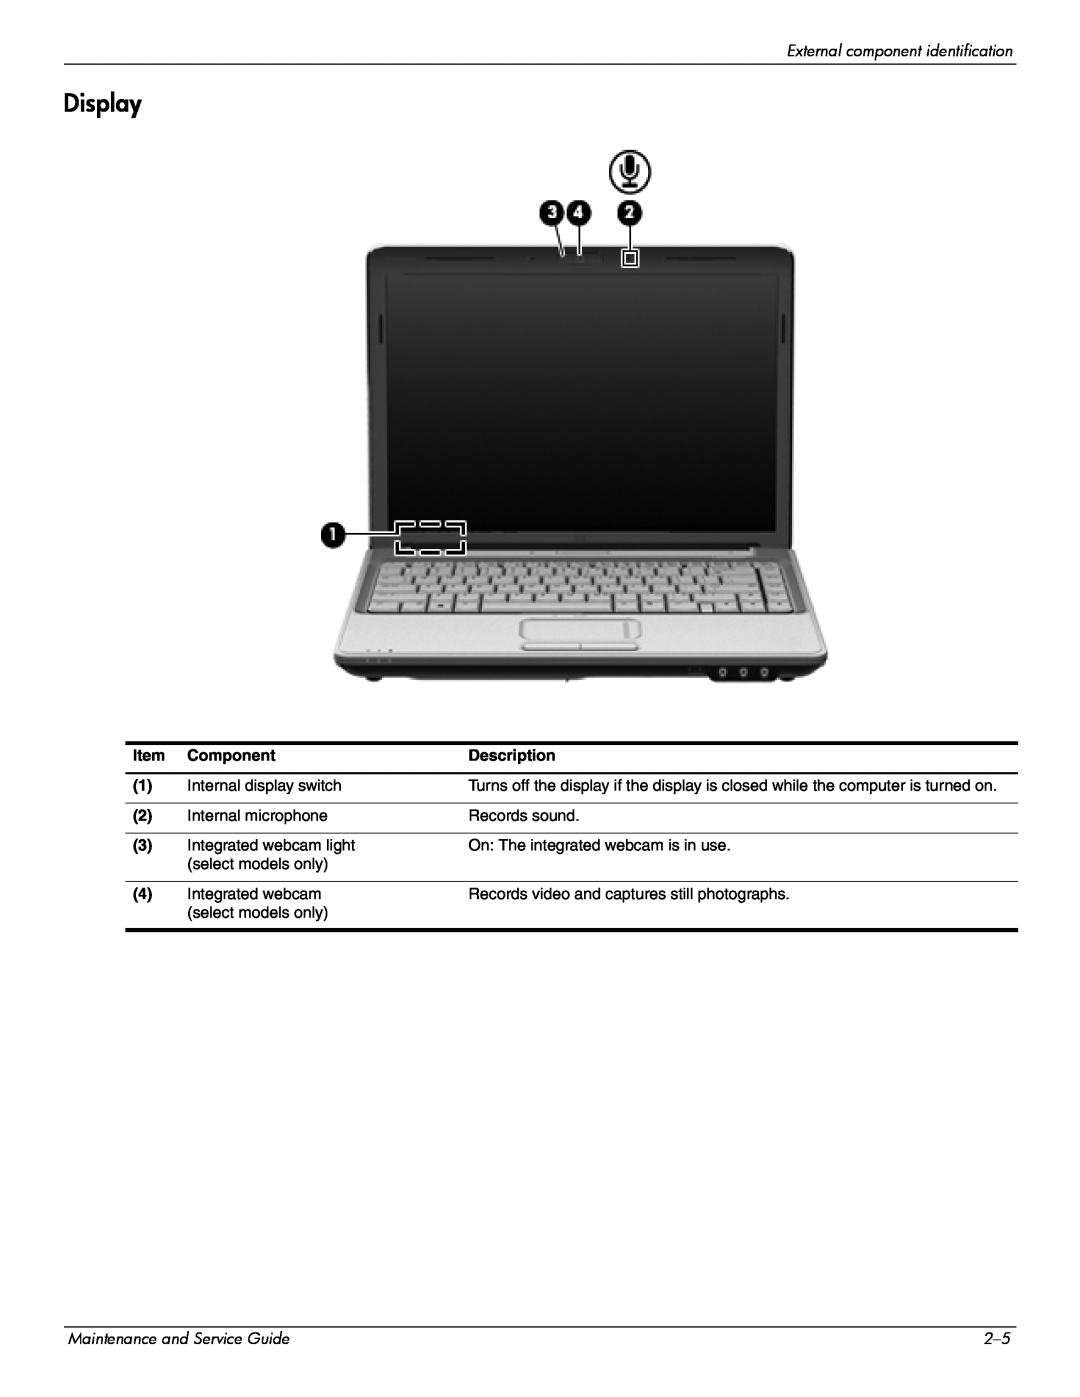 HP CQ41-206AU, CQ41-205AX, CQ41-204AU, CQ41-206AX, CQ41-207AX, CQ41-222AU, CQ41-218AU manual Display, Component, Description 